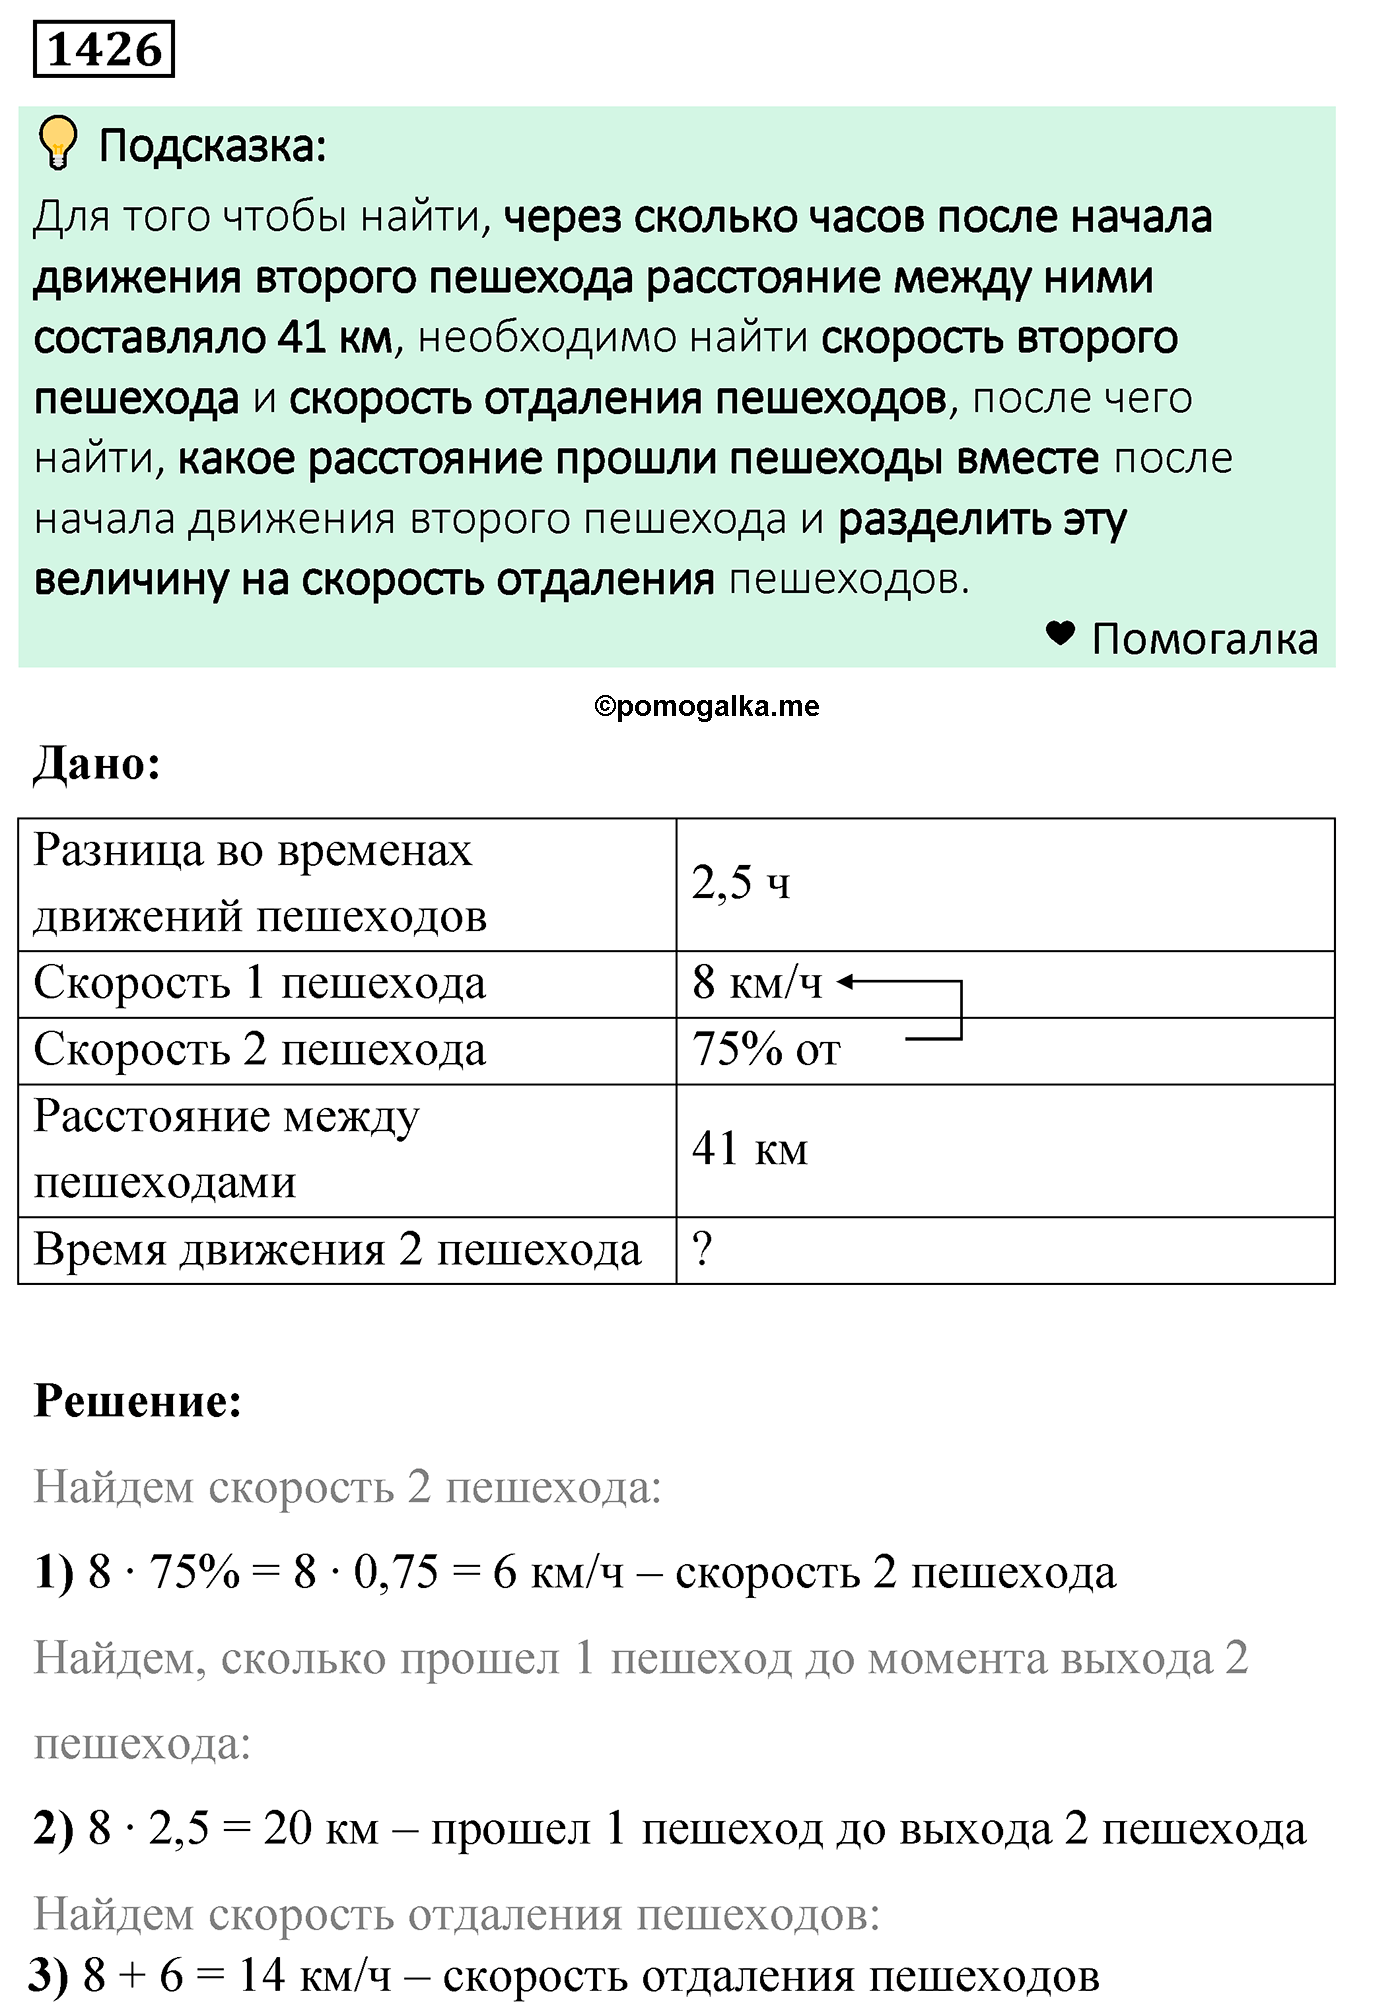 задача 1426 по математике 6 класс Мерзляк 2022 год